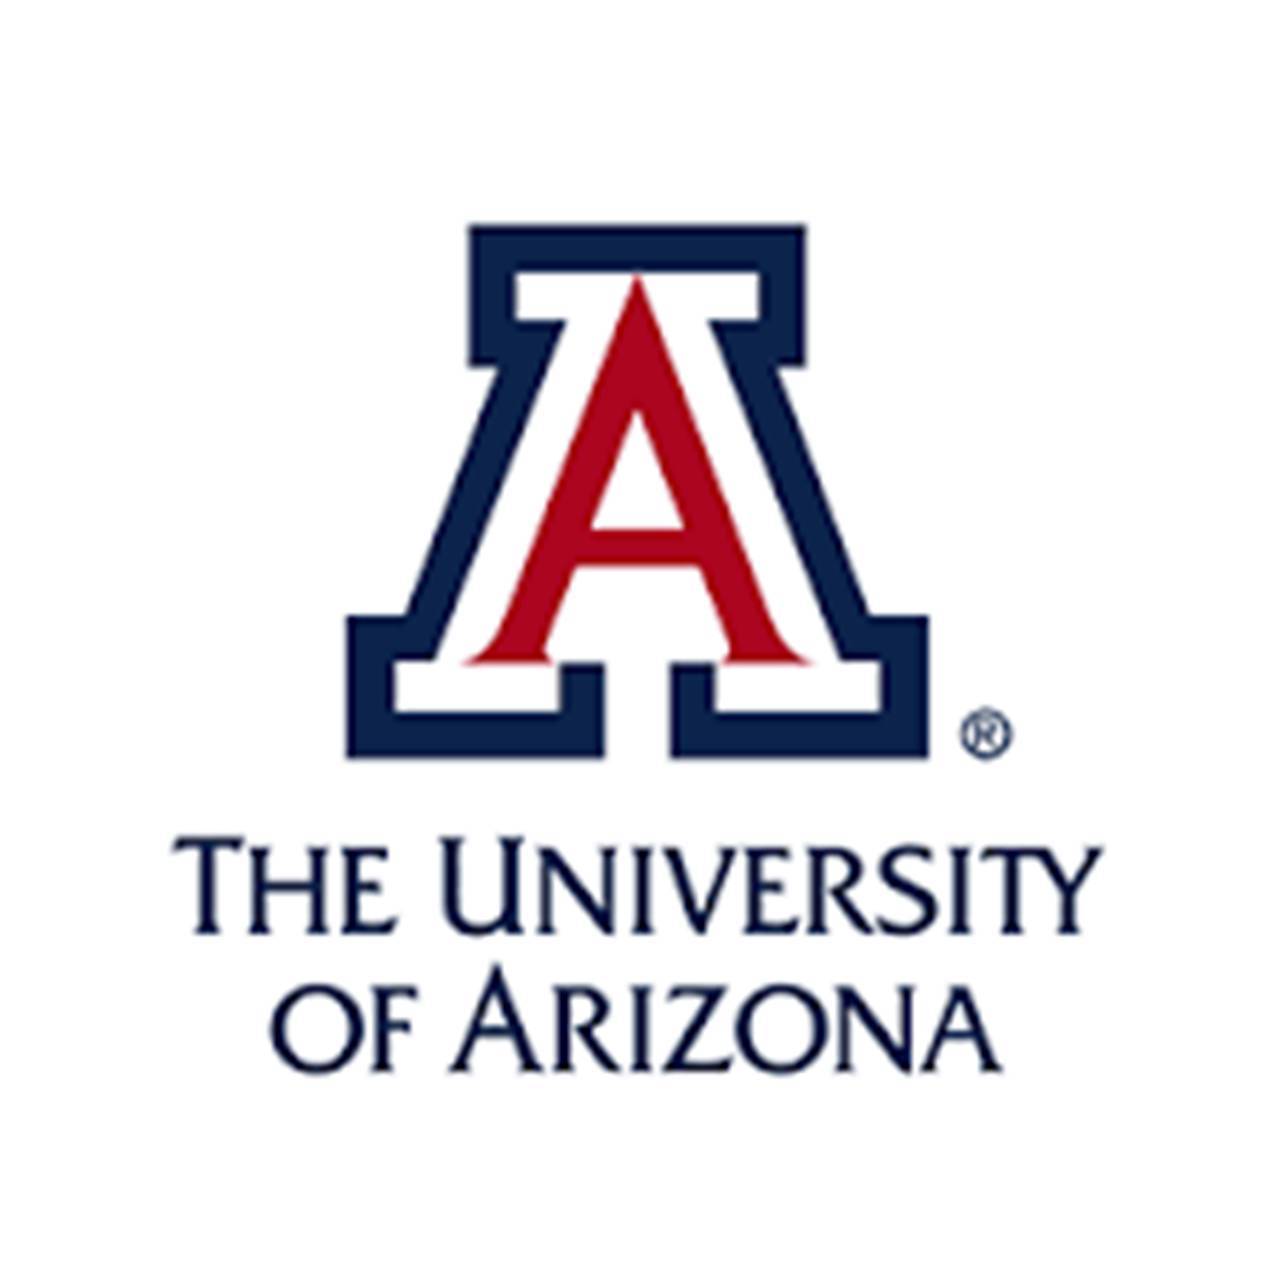 Univeristy of Arizona Logo - University Of Arizona Waist Band Sister Inc